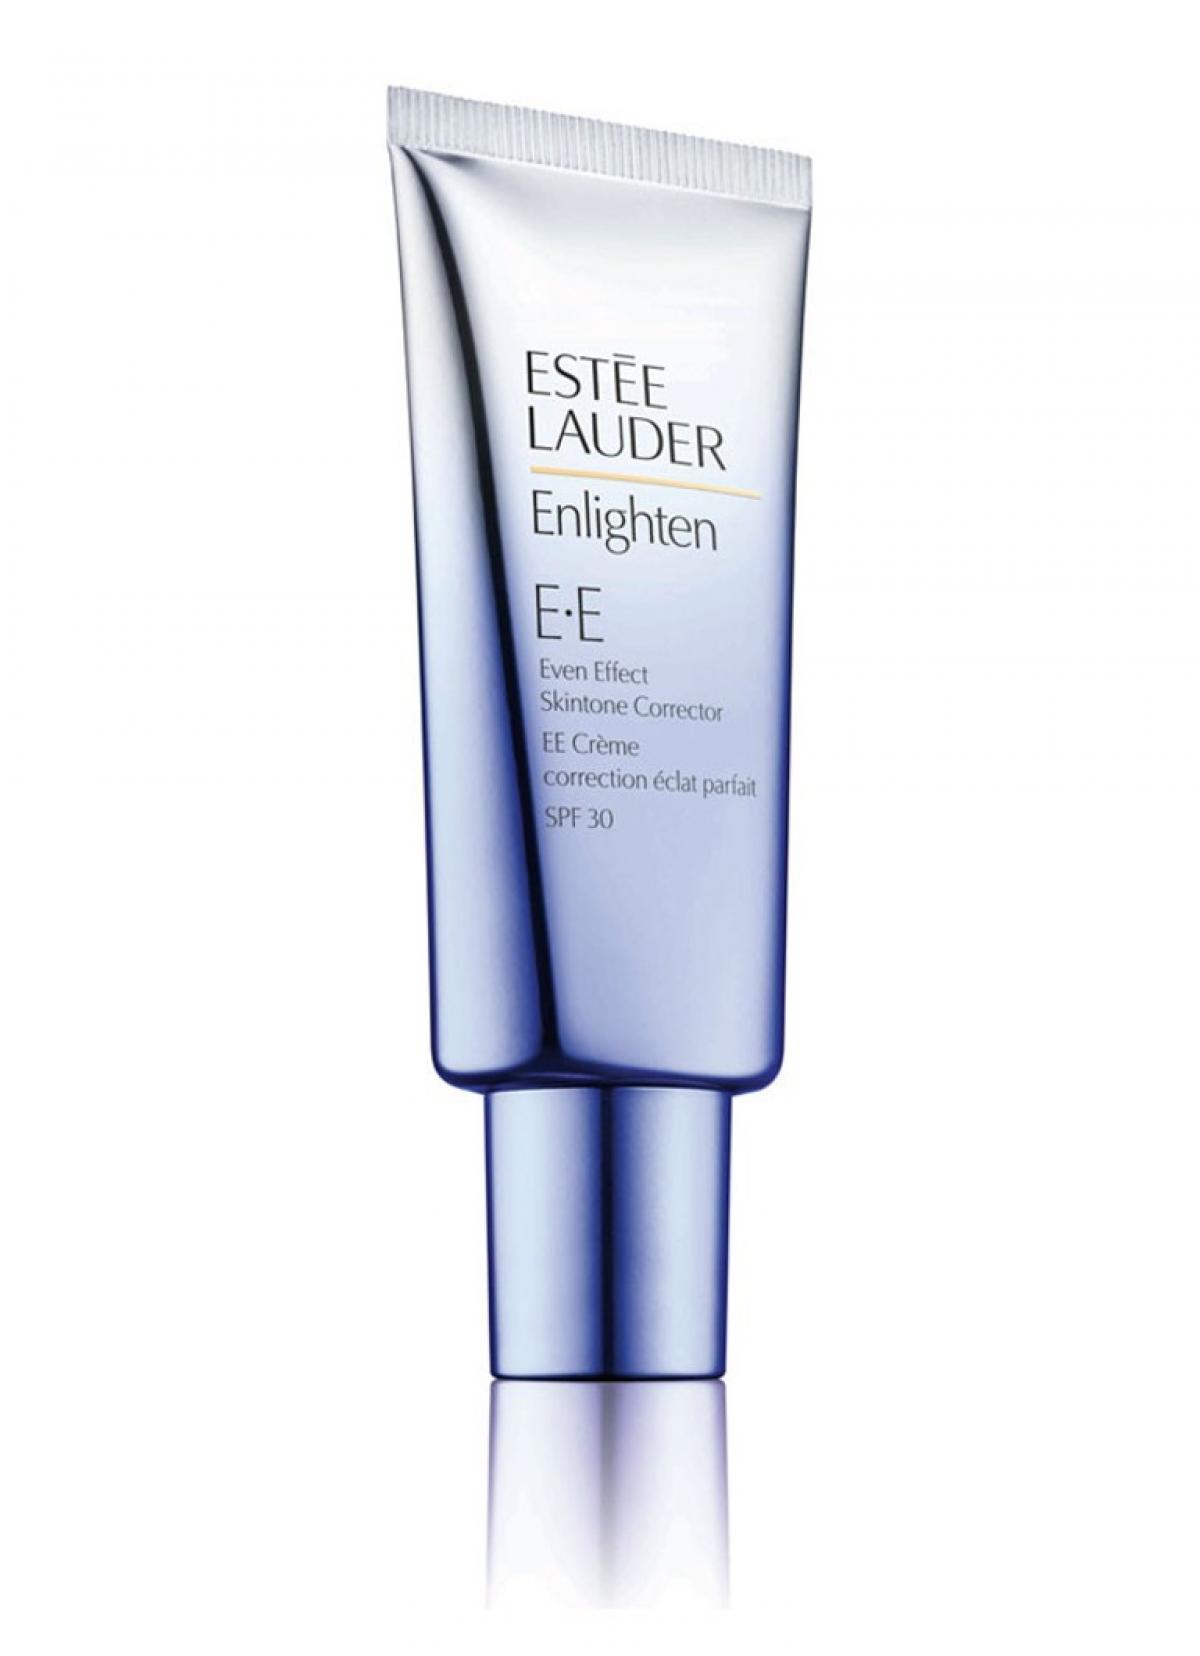 Foundation: Estée Lauder Enlighten Even Effect skintone correcting crème